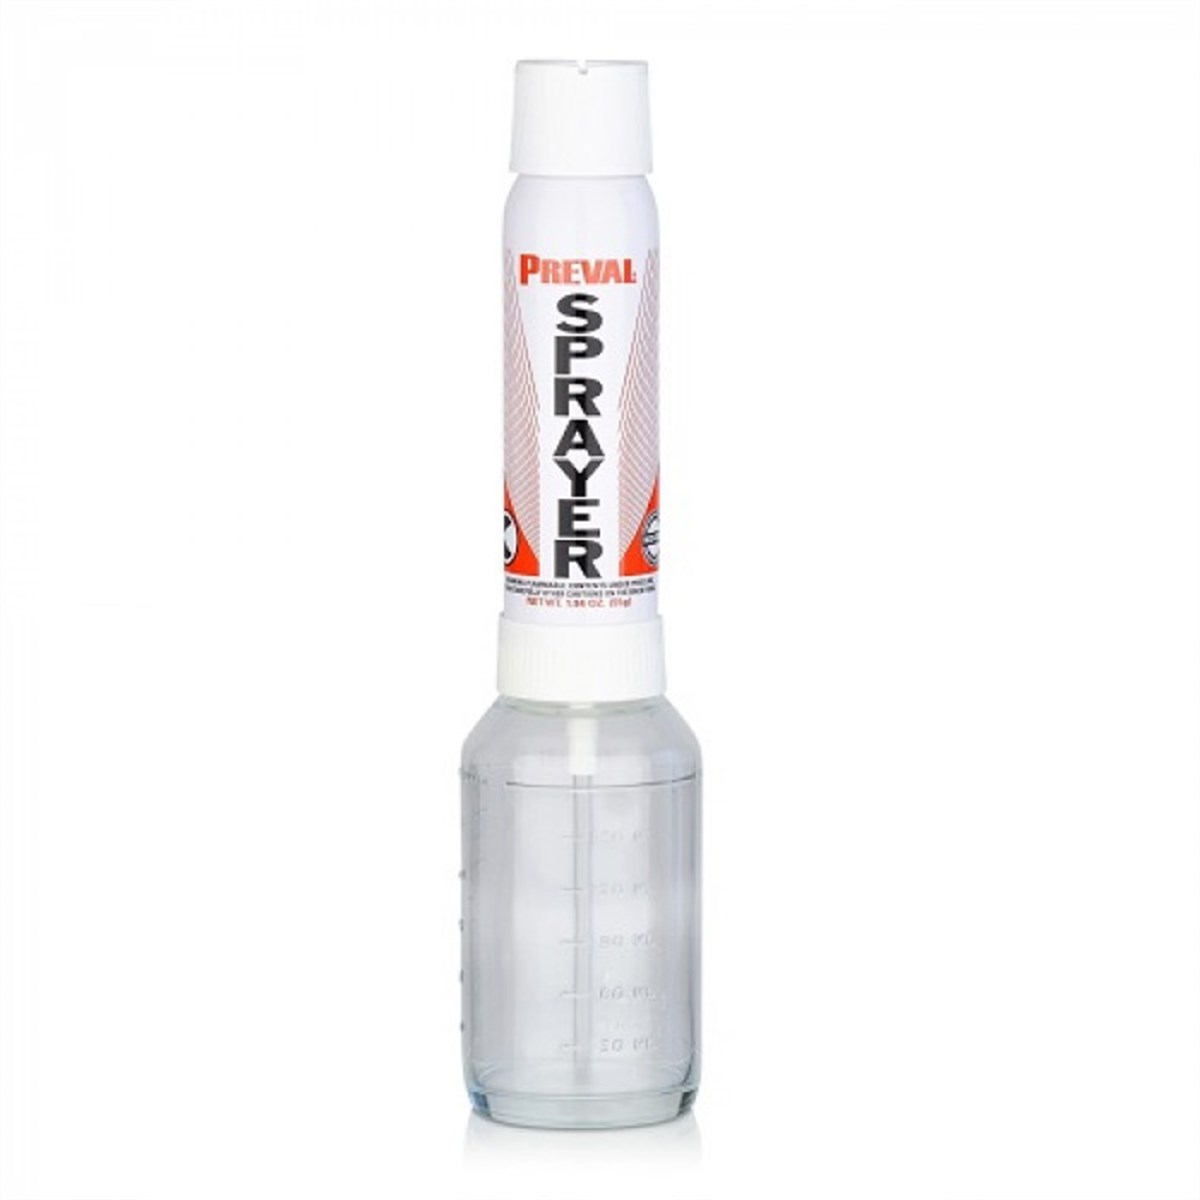 Preval Sprayer Sprey Tabancası Plastik Hazneli 200 CC Sprey Kutusu -  Nalburun